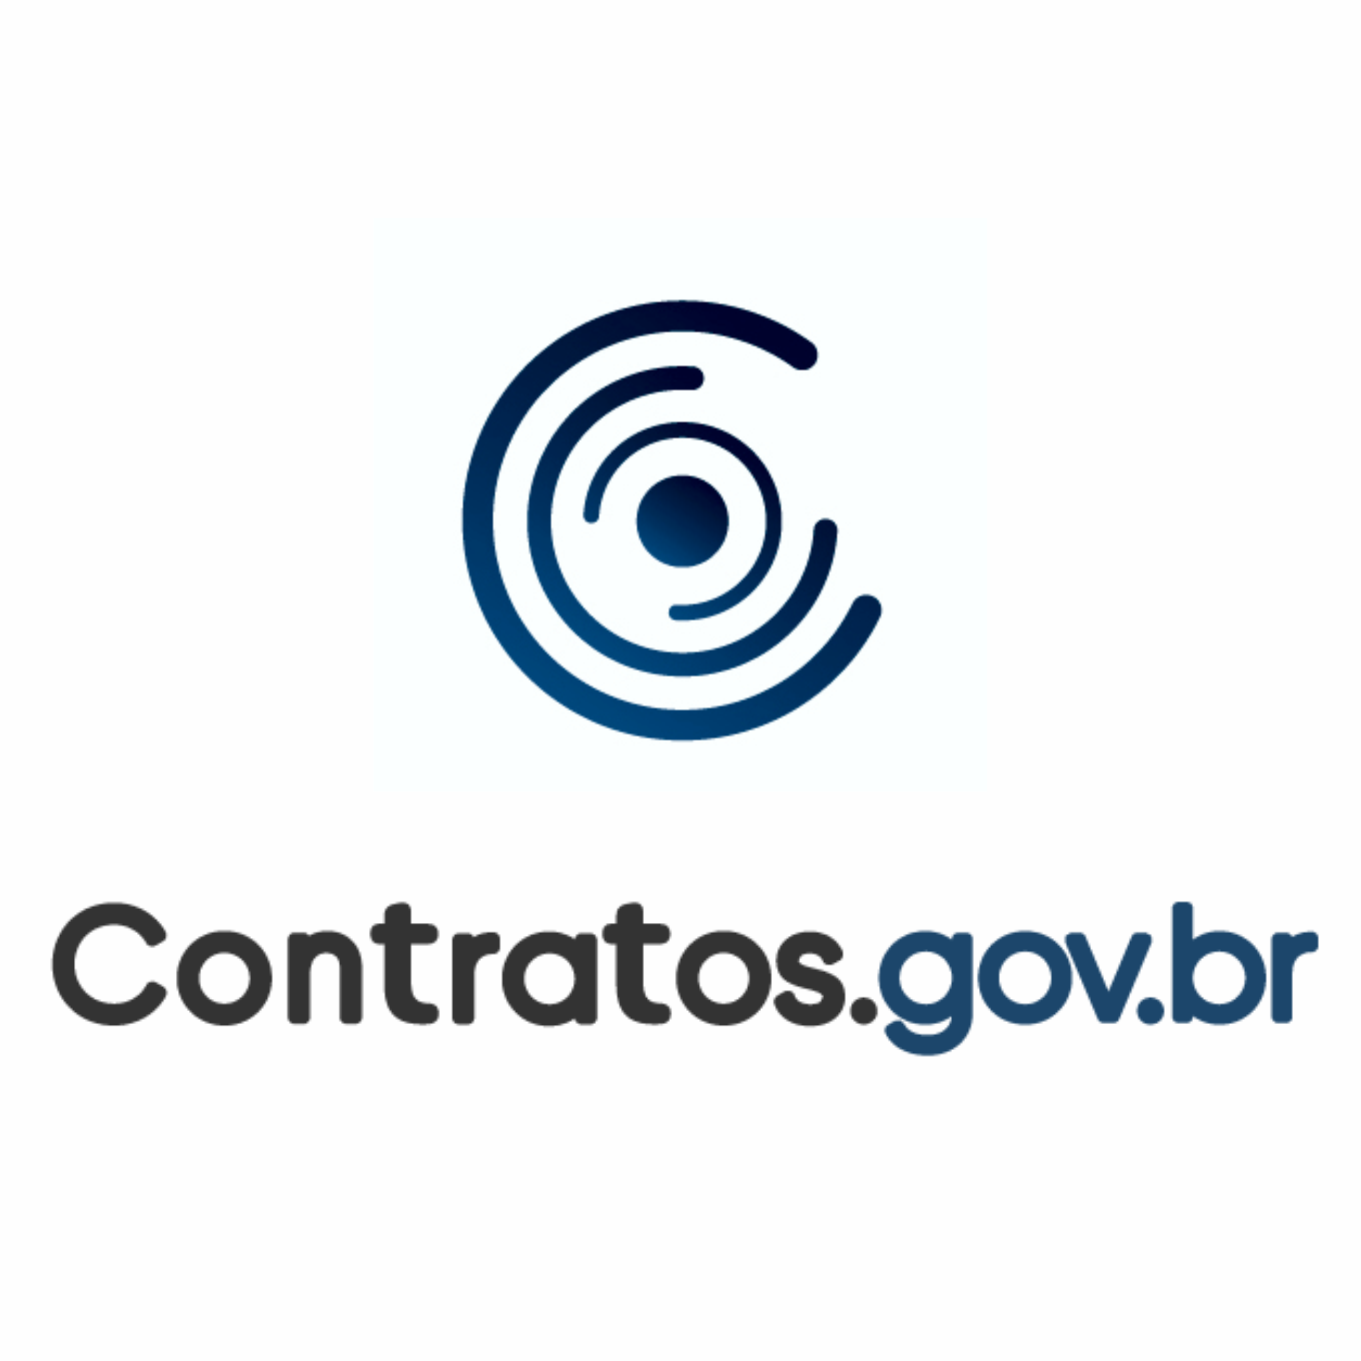 Treinamento Contratos.gov.br - Fiscalização - Presencial 2023